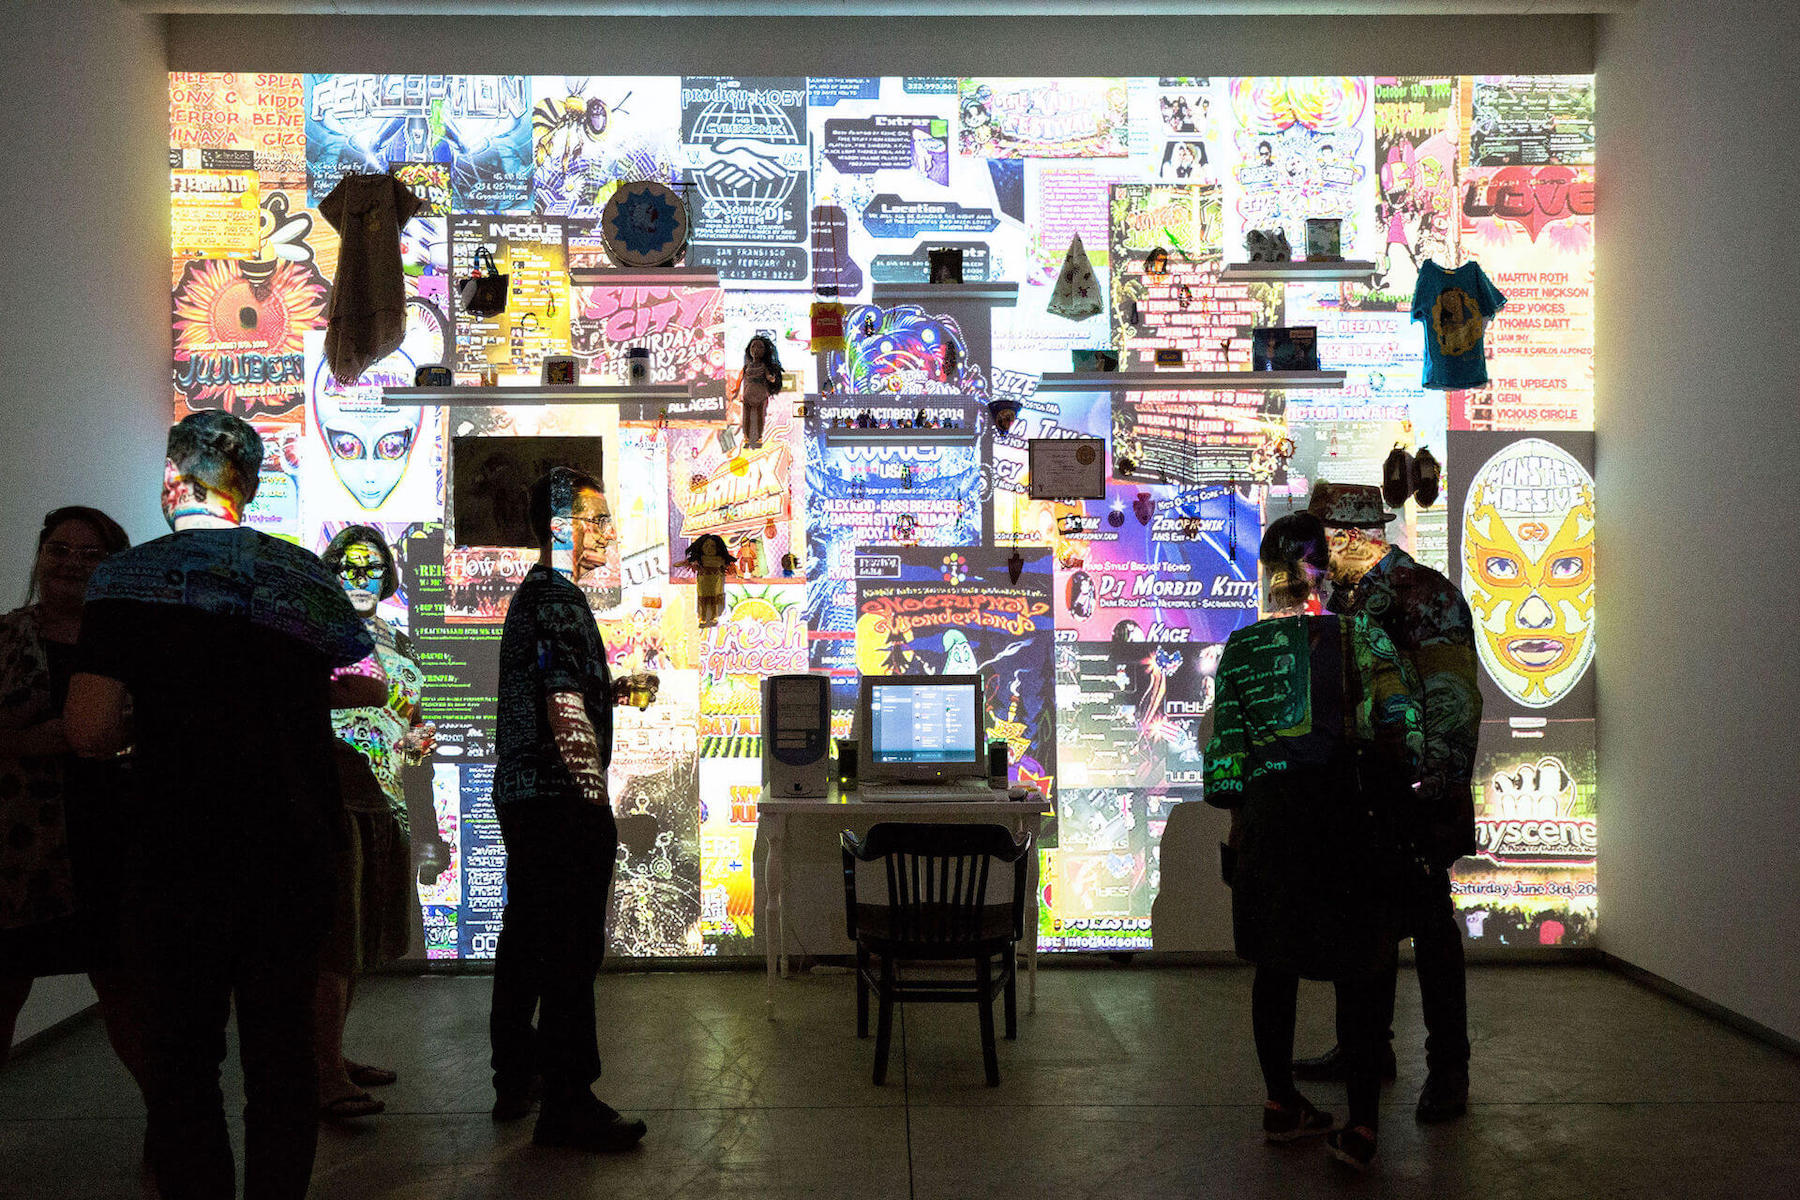 Vue de l'installation Better Off Alone, de la performeuse et artiste visuelle Kite (alias Suzanne Kite), dans l’exposition de groupe « Loner Culture » présentée par InterAccess dans le cadre du Festival du film et des arts médiatiques imagineNATIVE à Toronto. (Photo : Britney Townsend) 